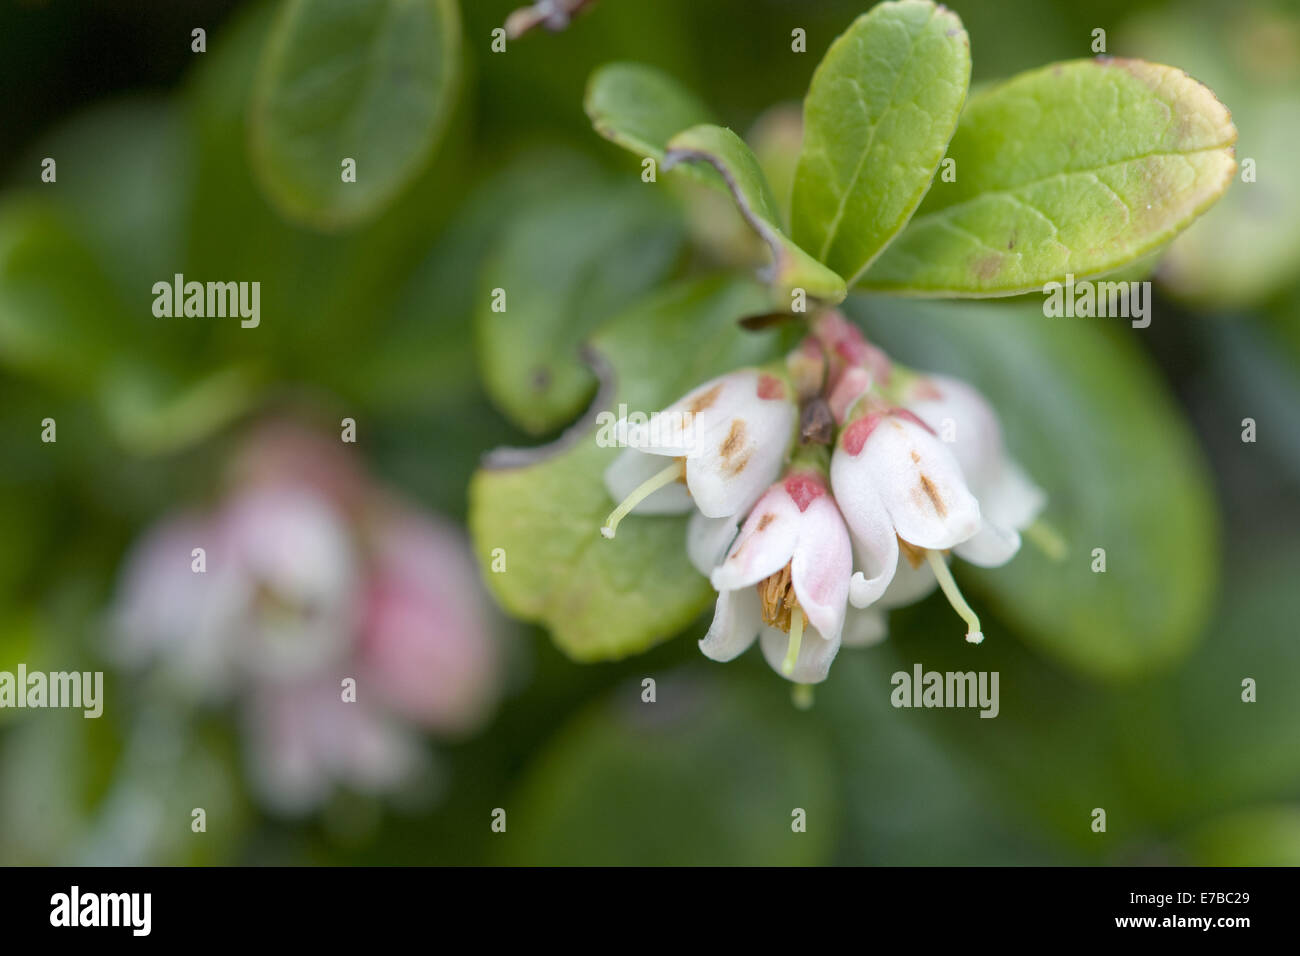 cowberry, vaccinium vitis-idaea Stock Photo